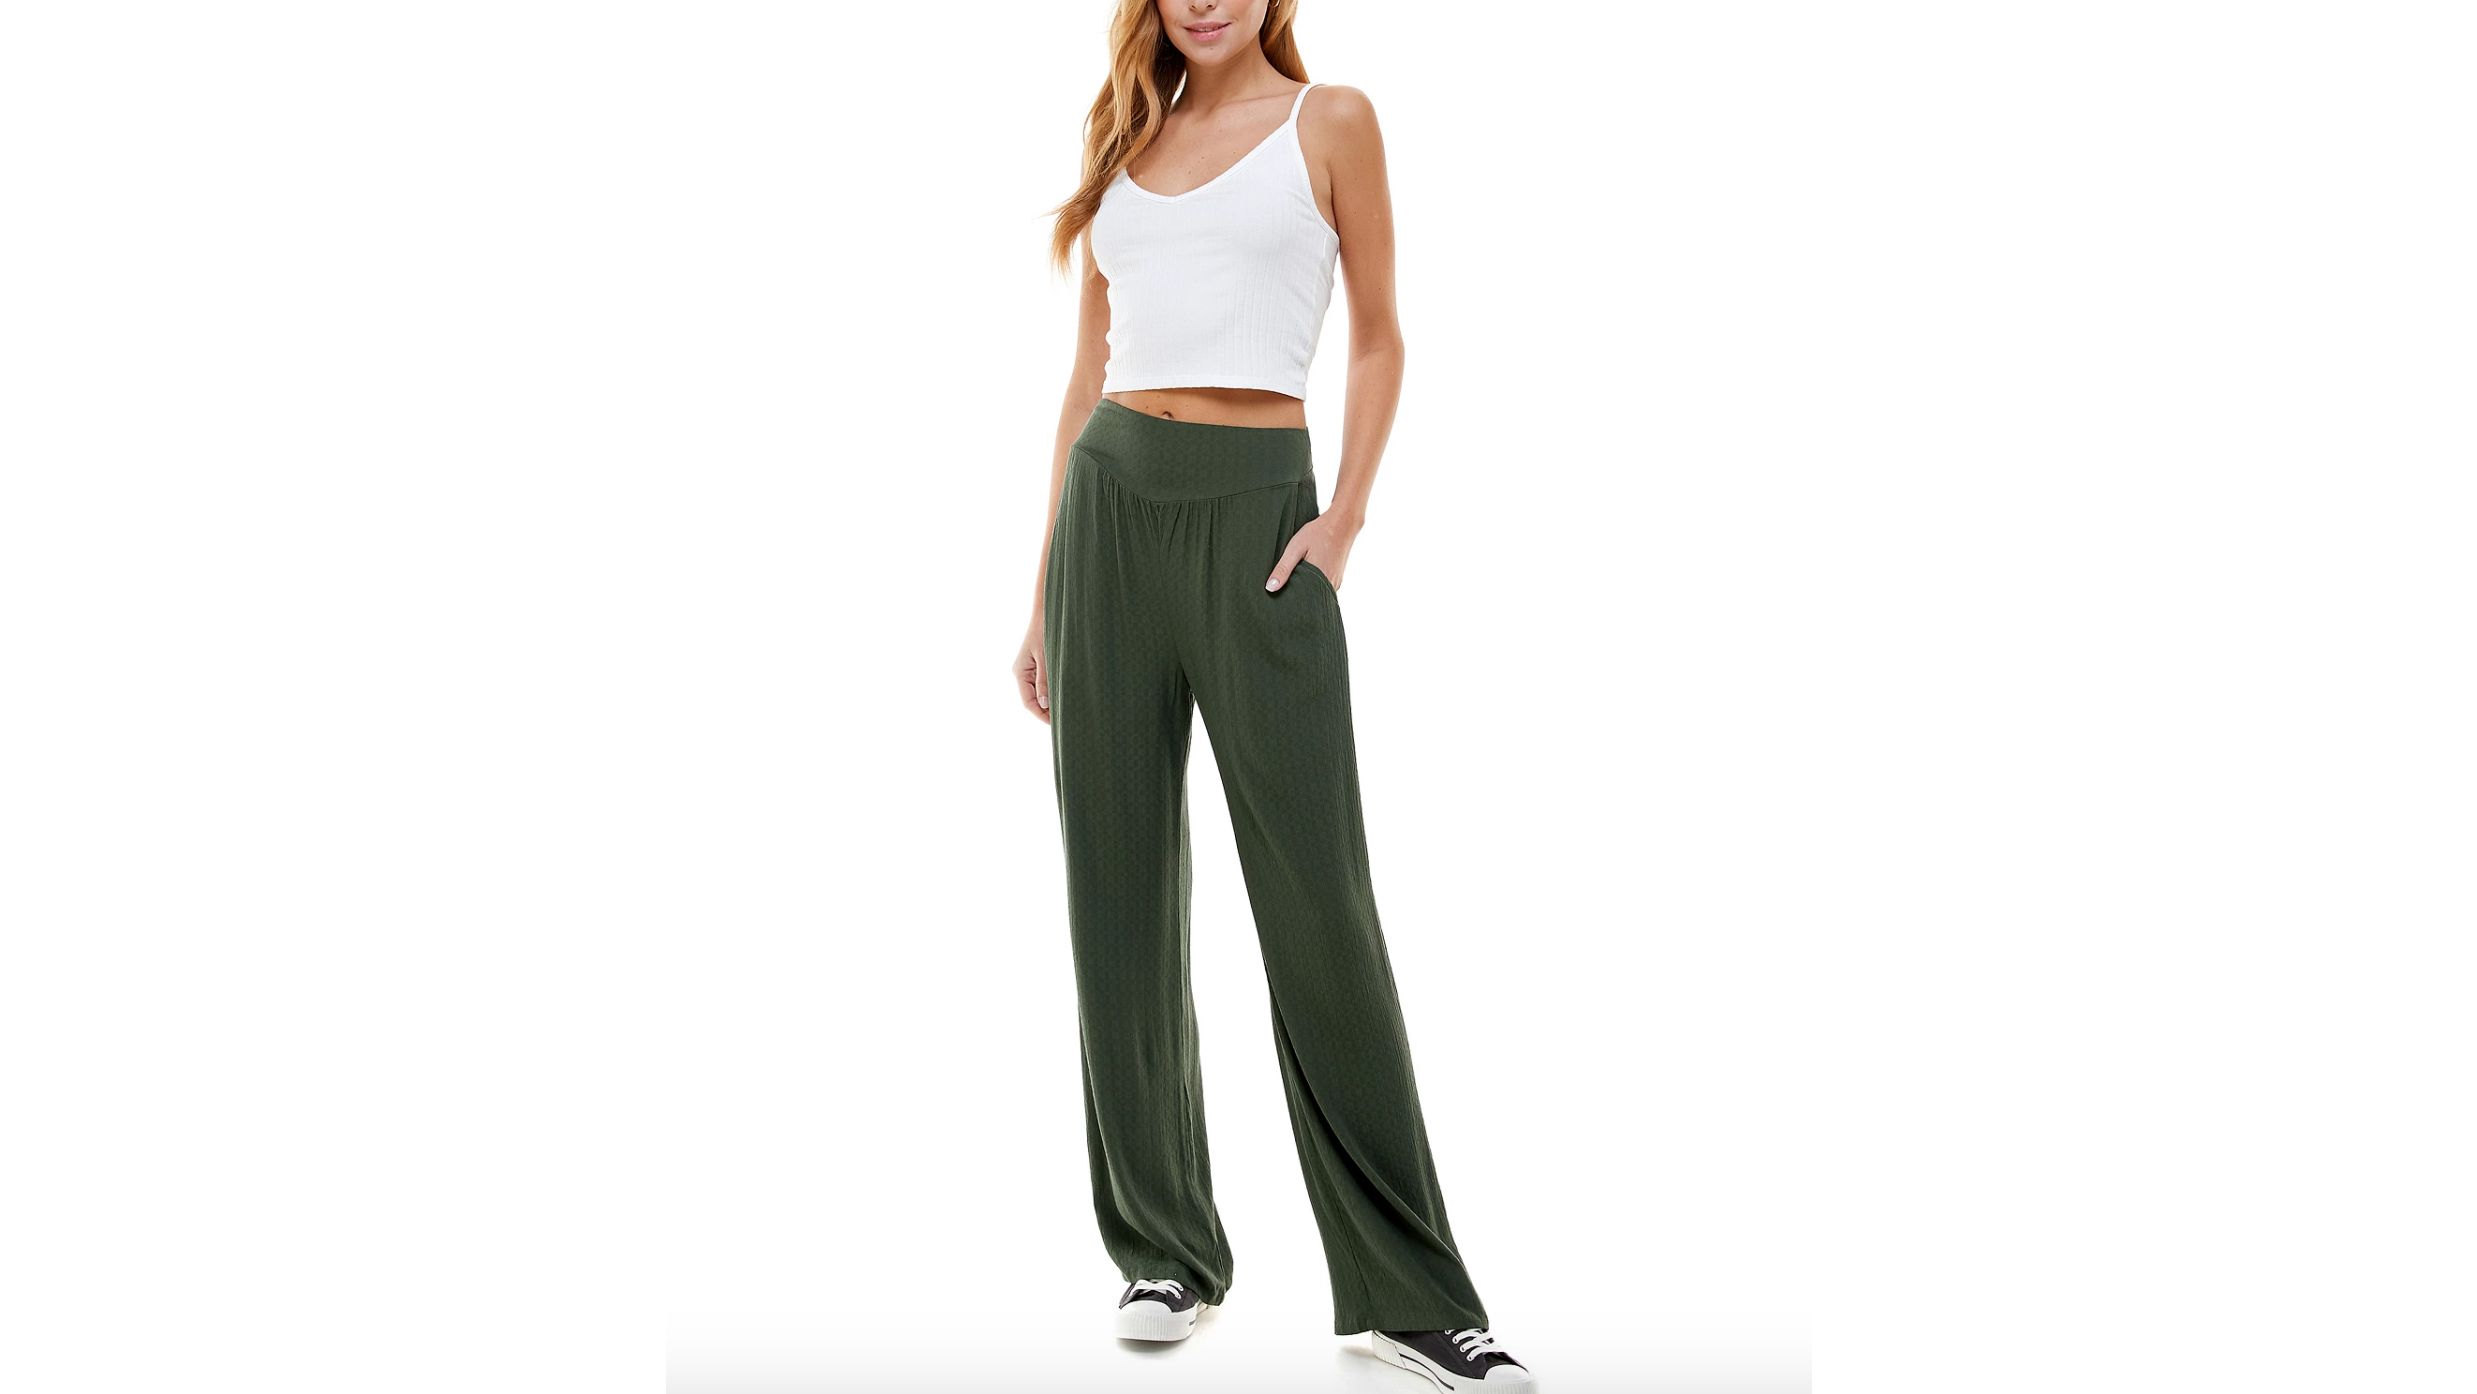 Gray Summer Pants: Shop Summer Pants - Macy's